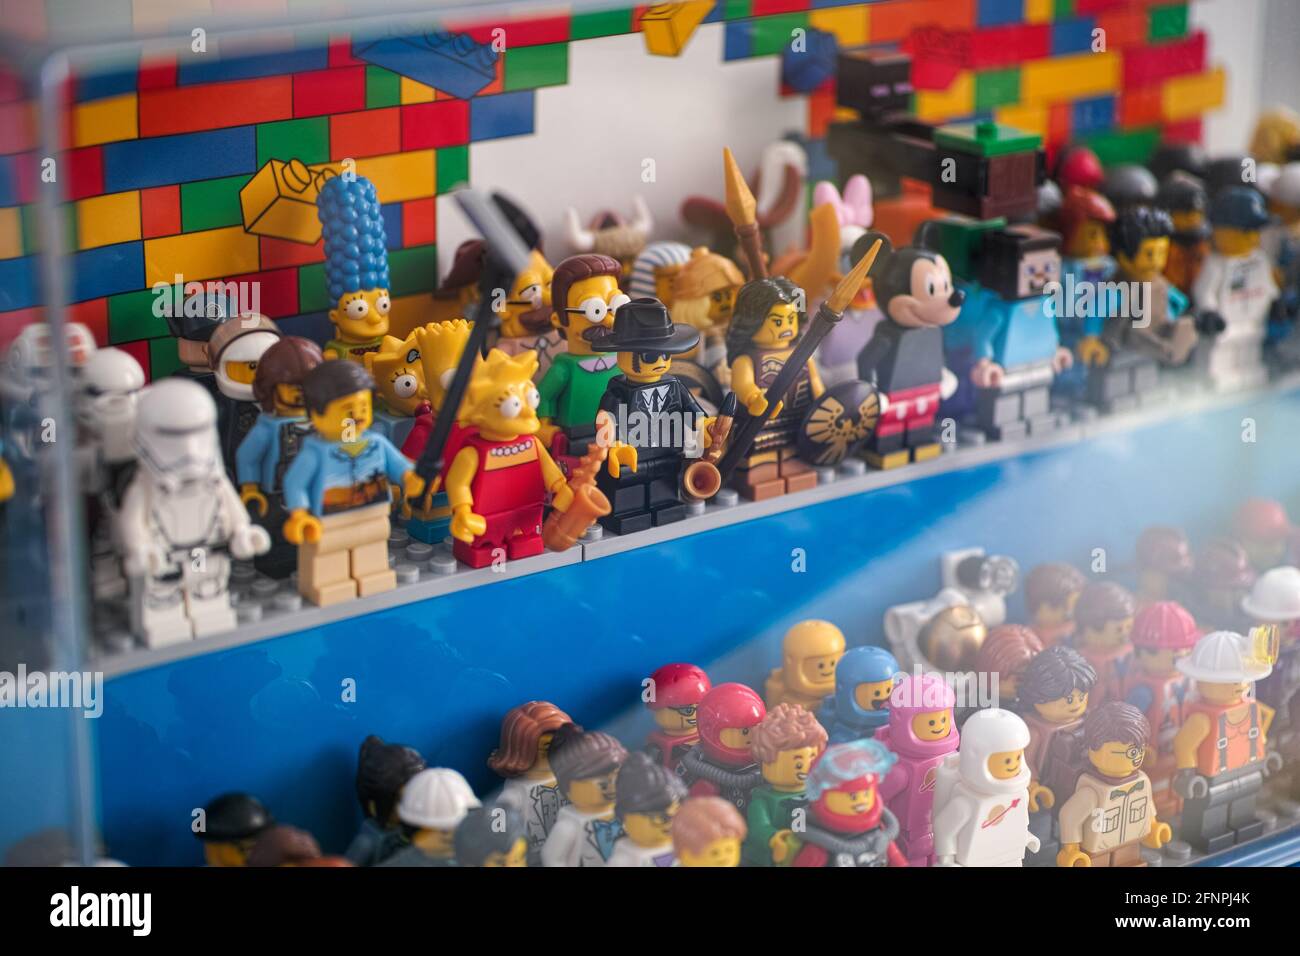 Tambow, Russische Föderation - 16. Mai 2021 Lego minifiguren stehen in einer Vitrine. Geringe Schärfentiefe. Stockfoto